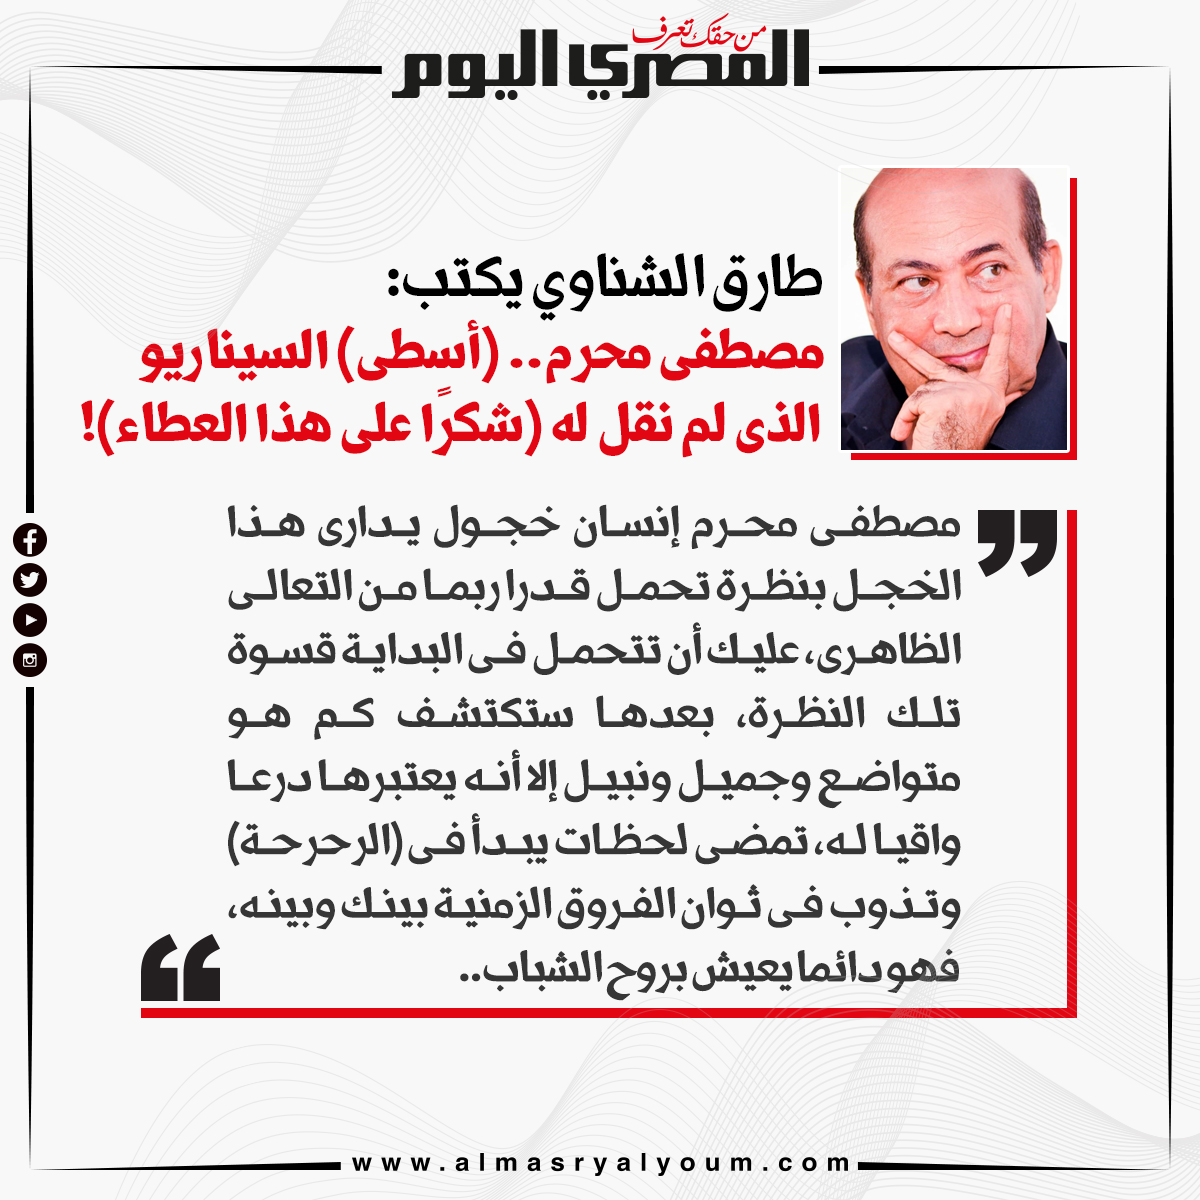 طارق الشناوي يكتب مصطفى محرم.. (أسطى) السيناريو الذى لم نقل له (شكرًا على هذا العطاء)!